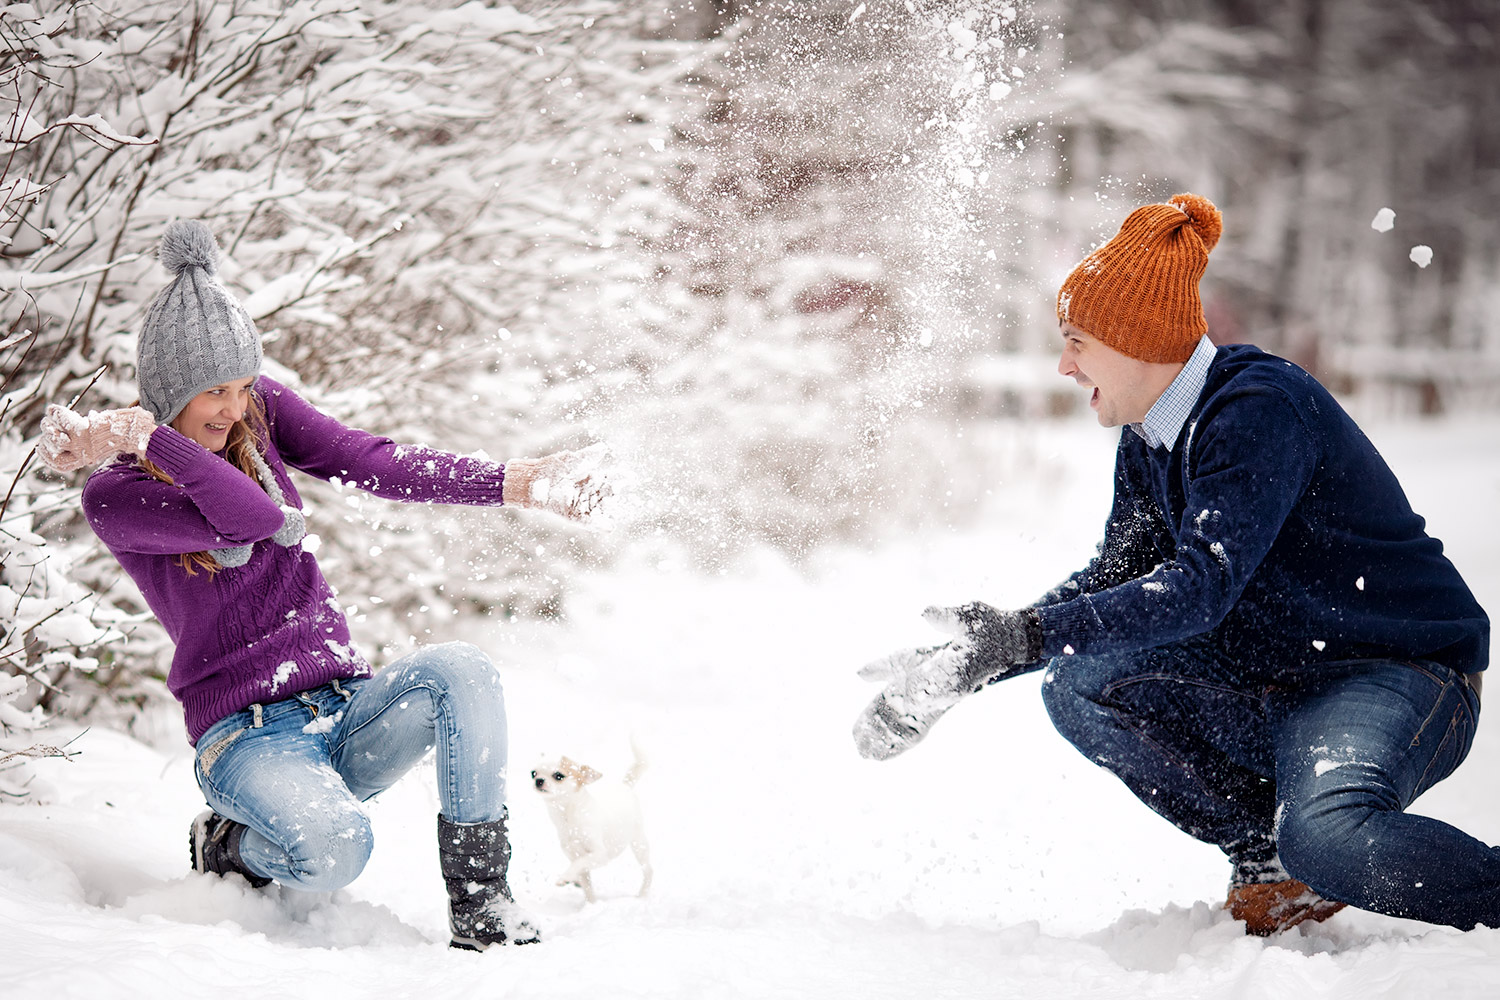 Кидались снежками. Игра в снежки. Зима радость. Люди зимой. Фотосессия зимой на улице.